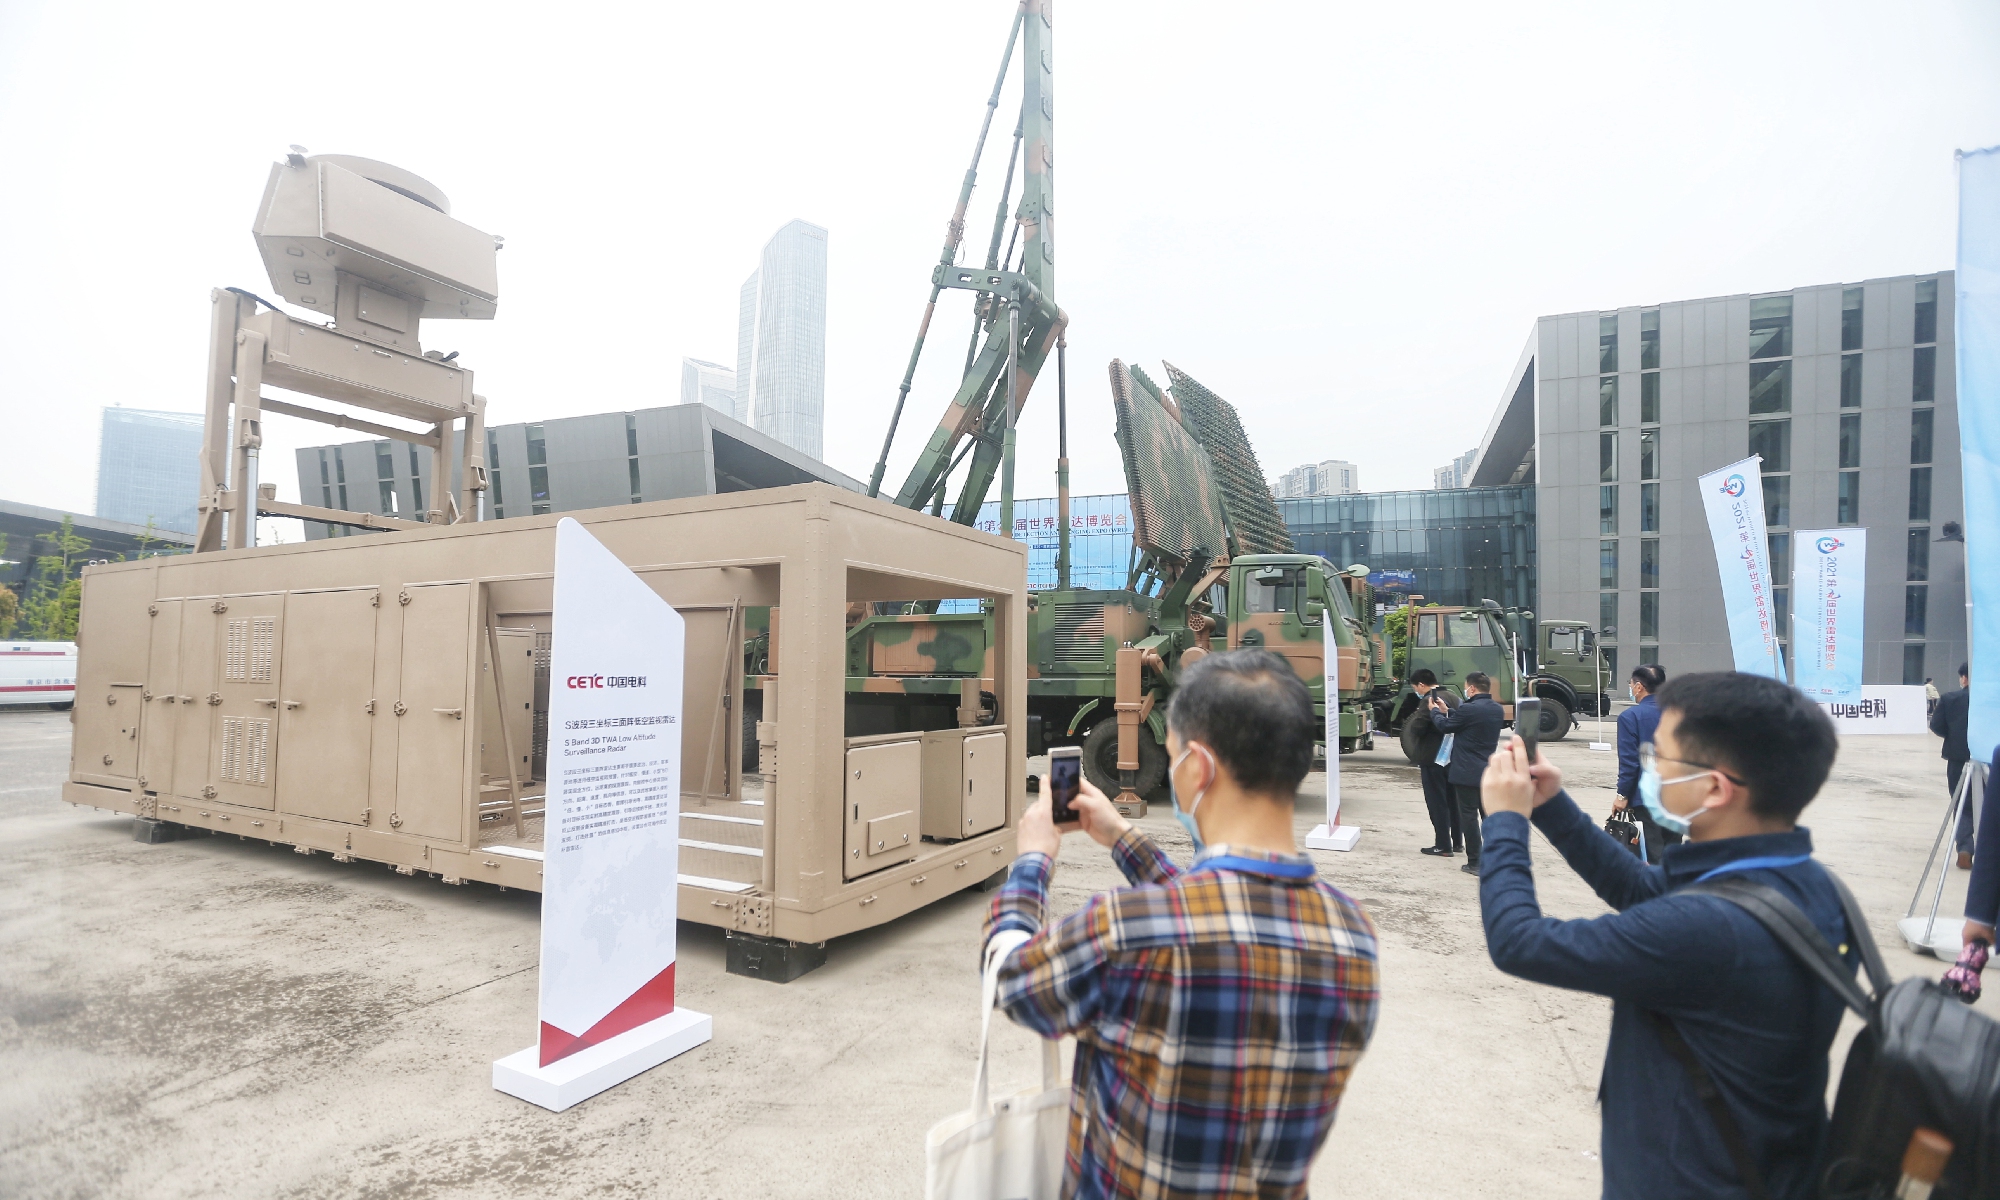 يُعرض رادار للمراقبة على ارتفاع منخفض S-band 3D TWA طورته شركة China Electronics Technology Group Co في معرض الرادار العالمي التاسع في نانجينغ بمقاطعة جيانغسو شرق الصين في 23 أبريل 2021. الصورة: Cui Meng / GT